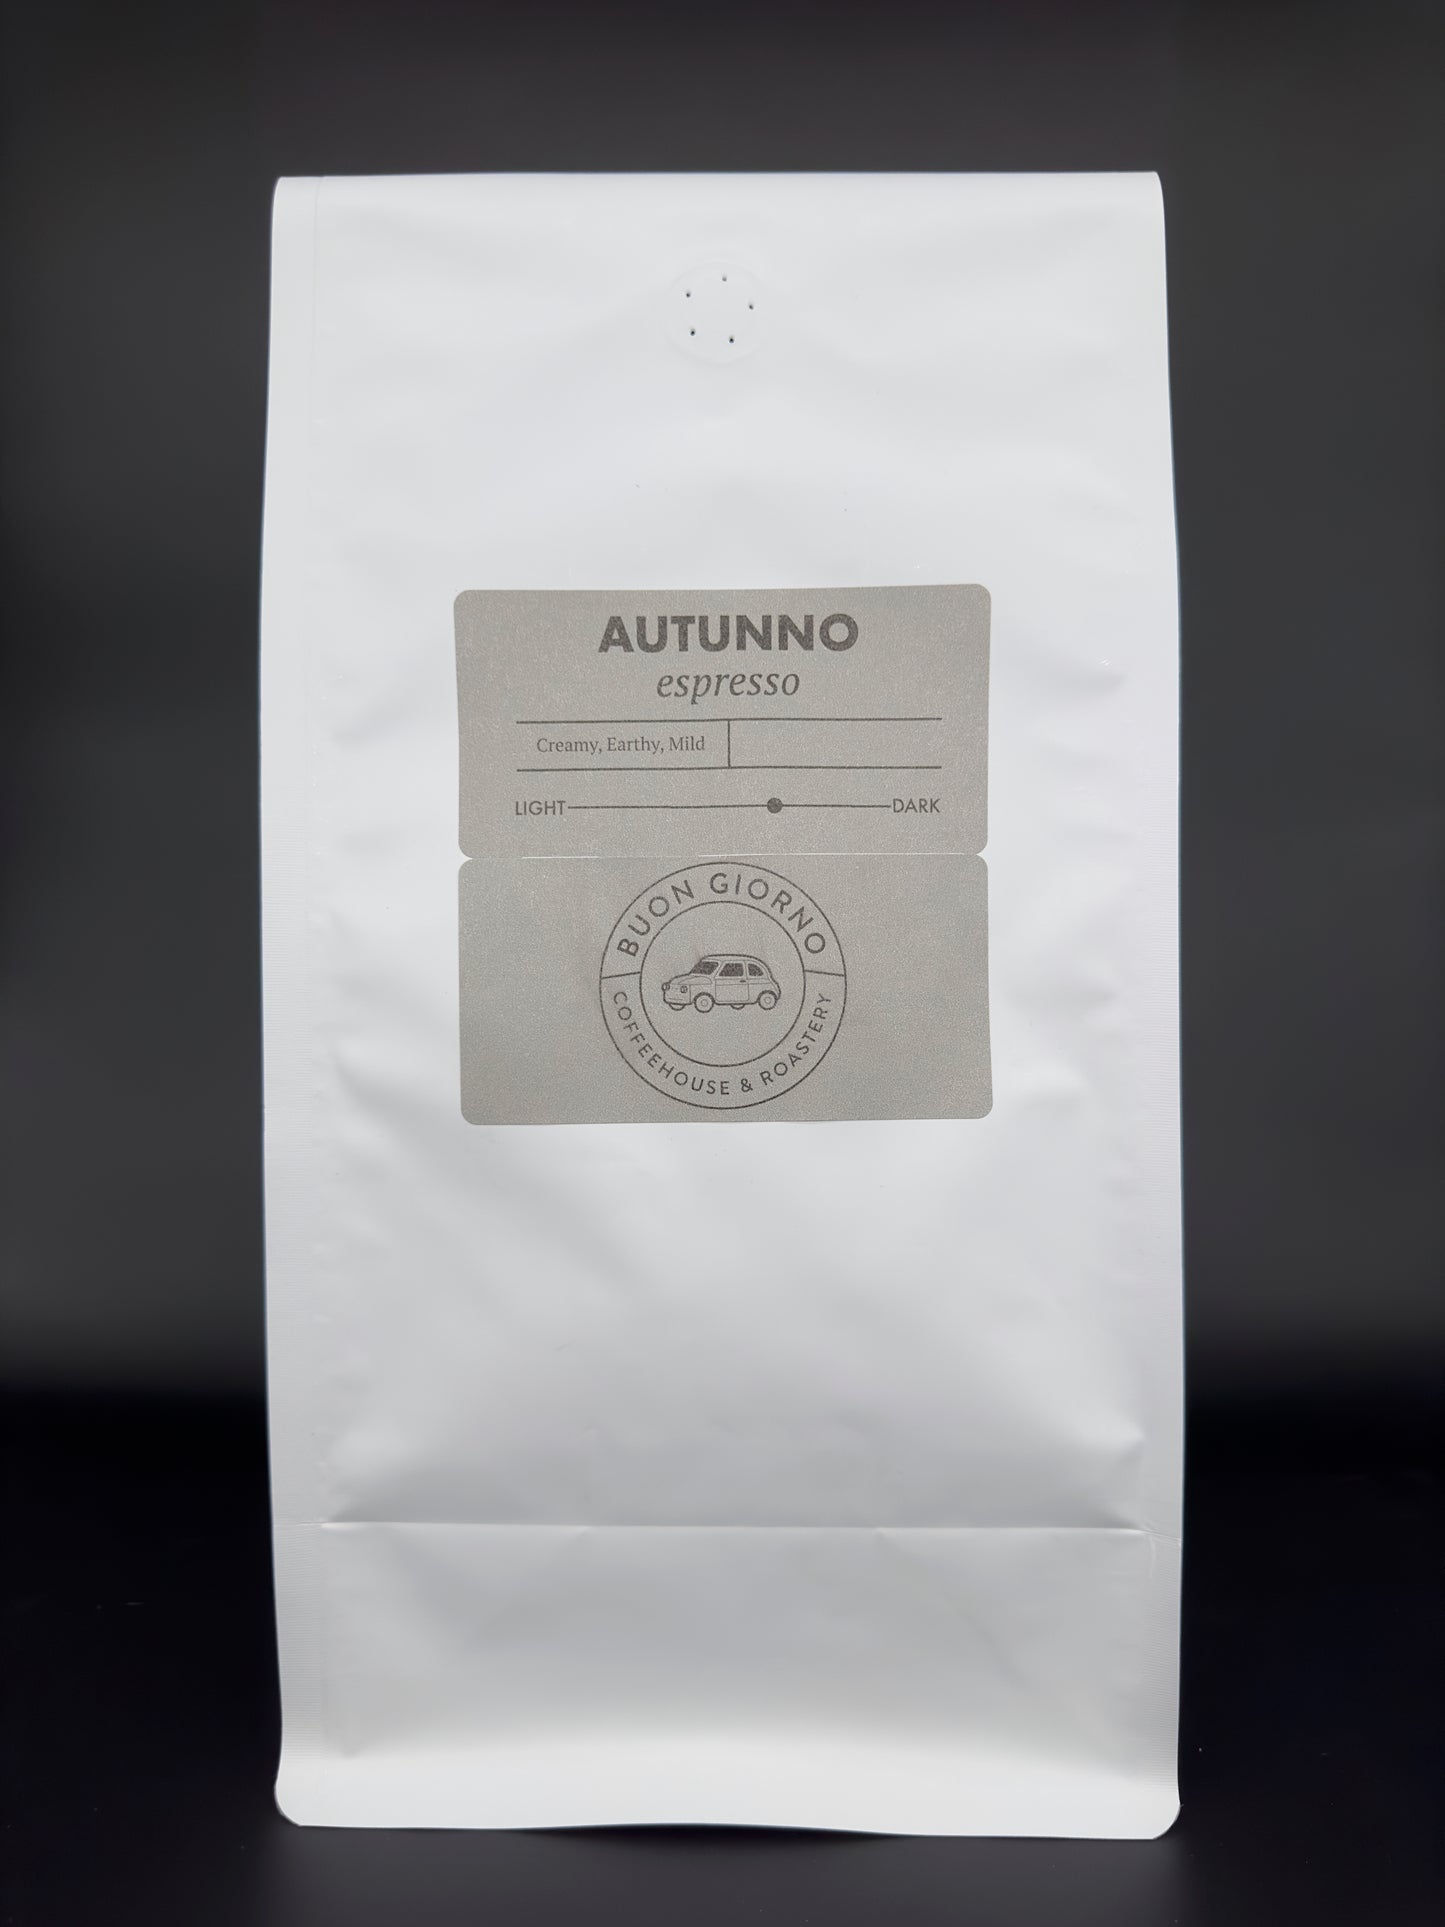 Espresso Autunno - Wholesale